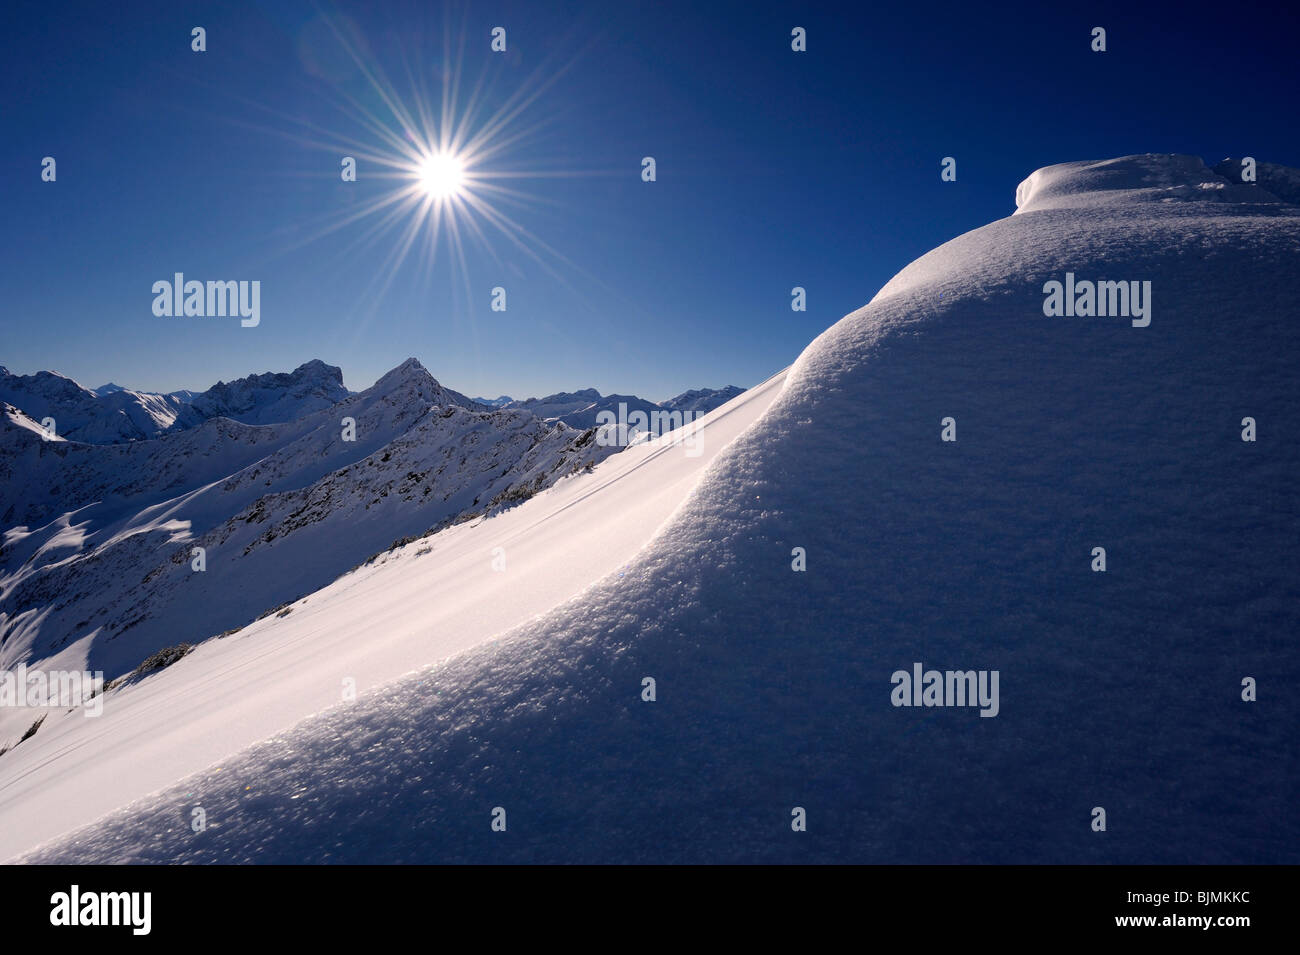 Corniche de neige avec un soleil en forme d'étoiles en face d'un panorama de montagnes, Rietzler, Kleinwalsertal, Vorarlberg, Autriche, Europe Banque D'Images